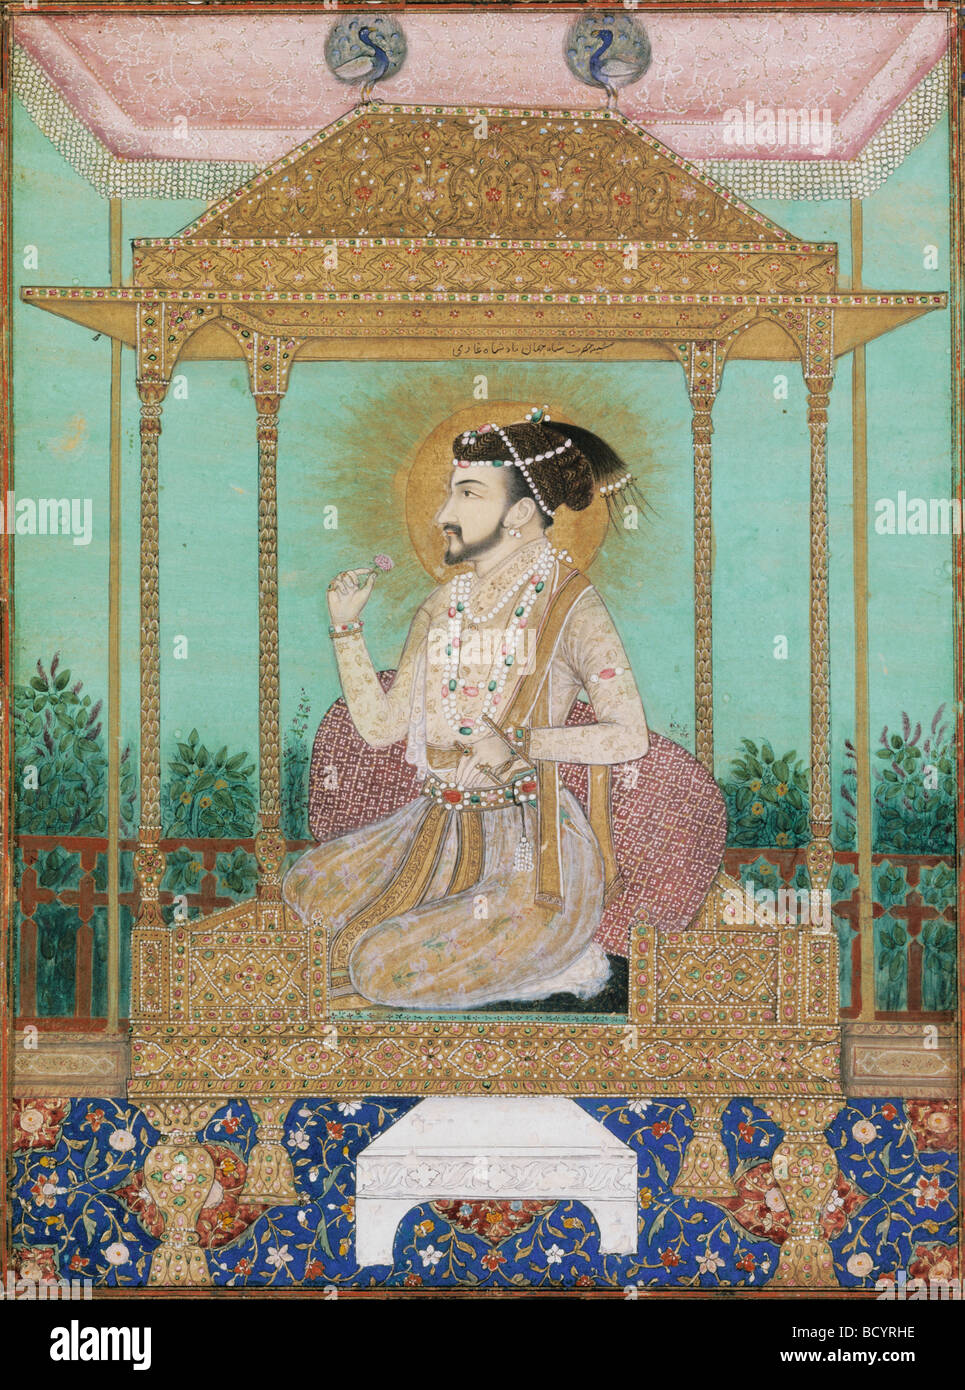 Shah Jahan assis sur le Trône du paon, Style Mughal. L'Inde, début du 17e siècle Banque D'Images